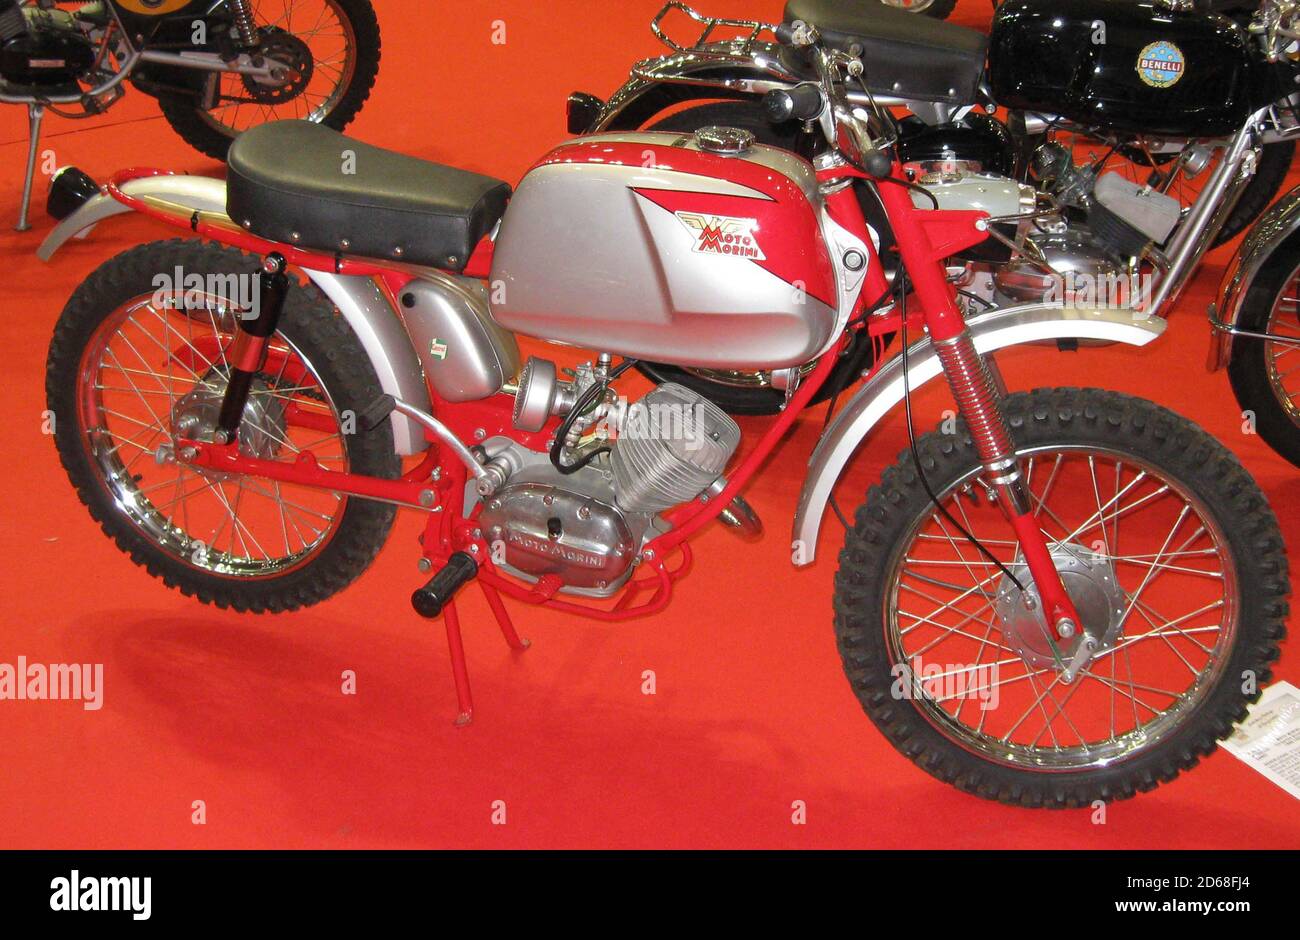 Vecchia motocicletta italiana: Moto Morini Corsarino Scrambler 50 cc (1968  Foto stock - Alamy